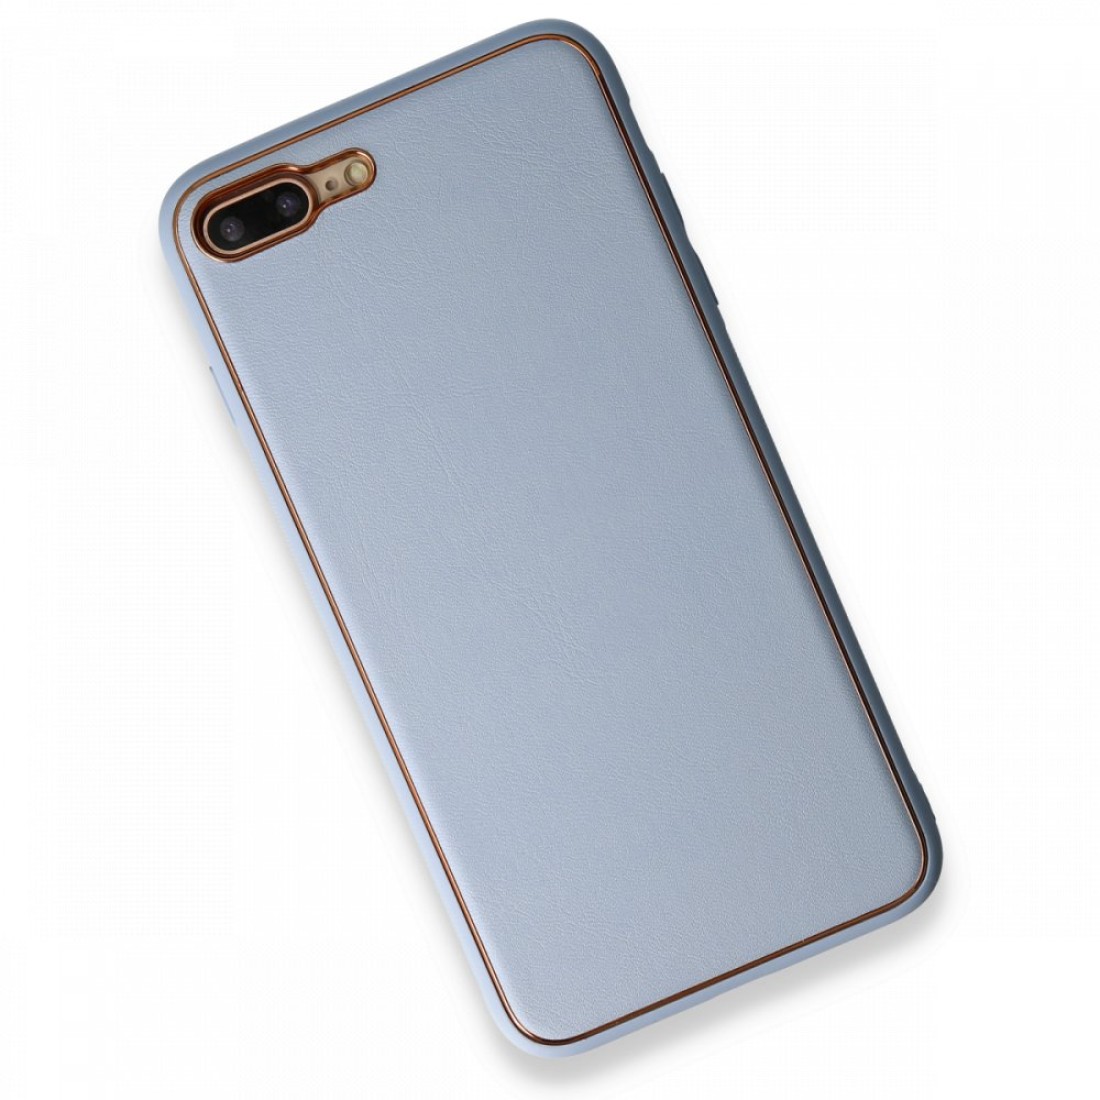 Apple iPhone 7 Plus Kılıf Coco Deri Silikon Kapak - Açık Mavi